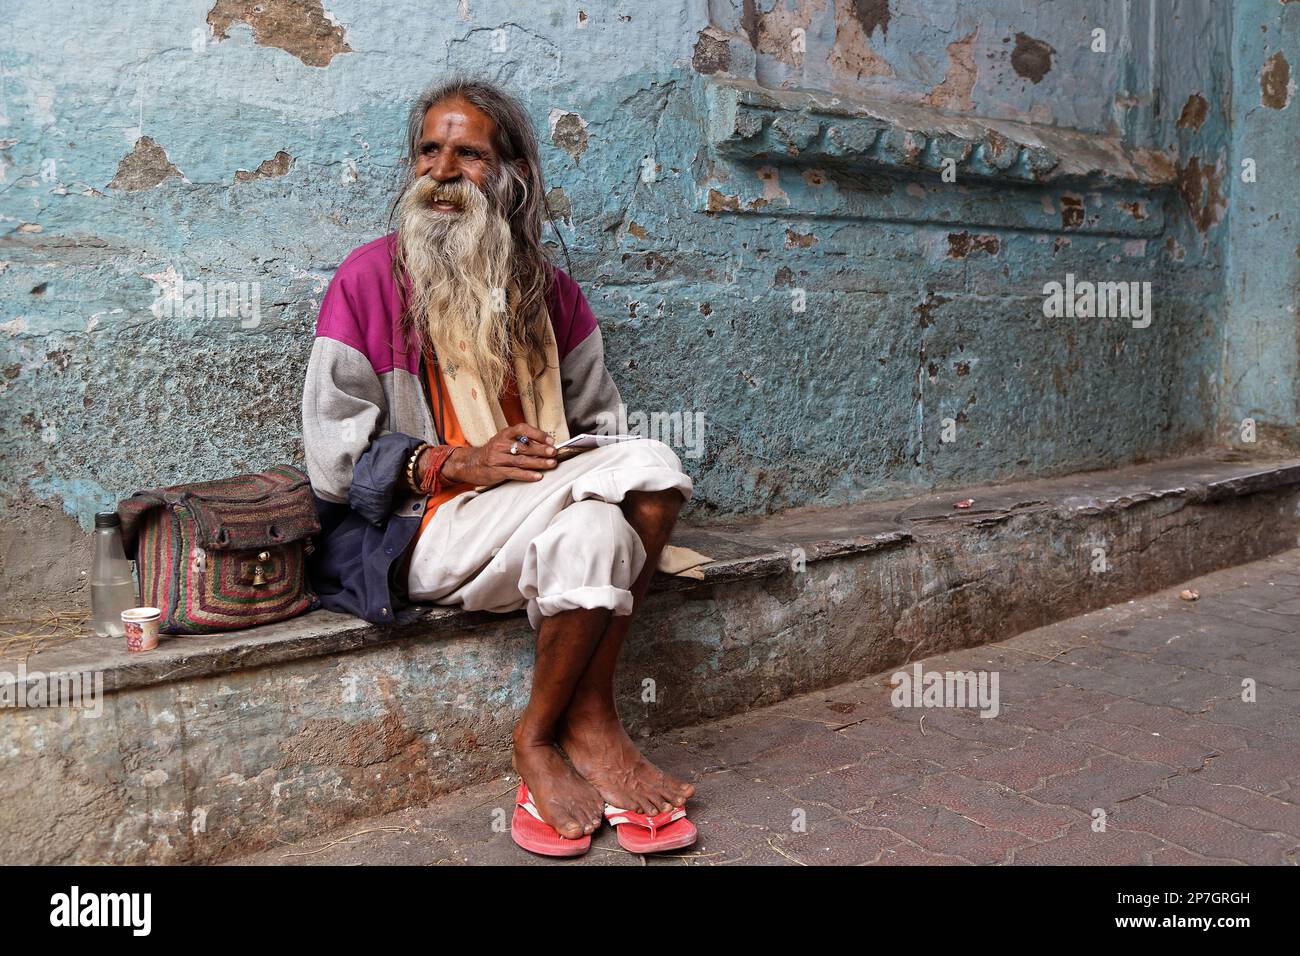 UDAIPUR, INDE, 5 novembre 2017 : Portrait d'un ancien peintre indien travaillant dans la rue d'Udaipur, Rajasthan. Banque D'Images